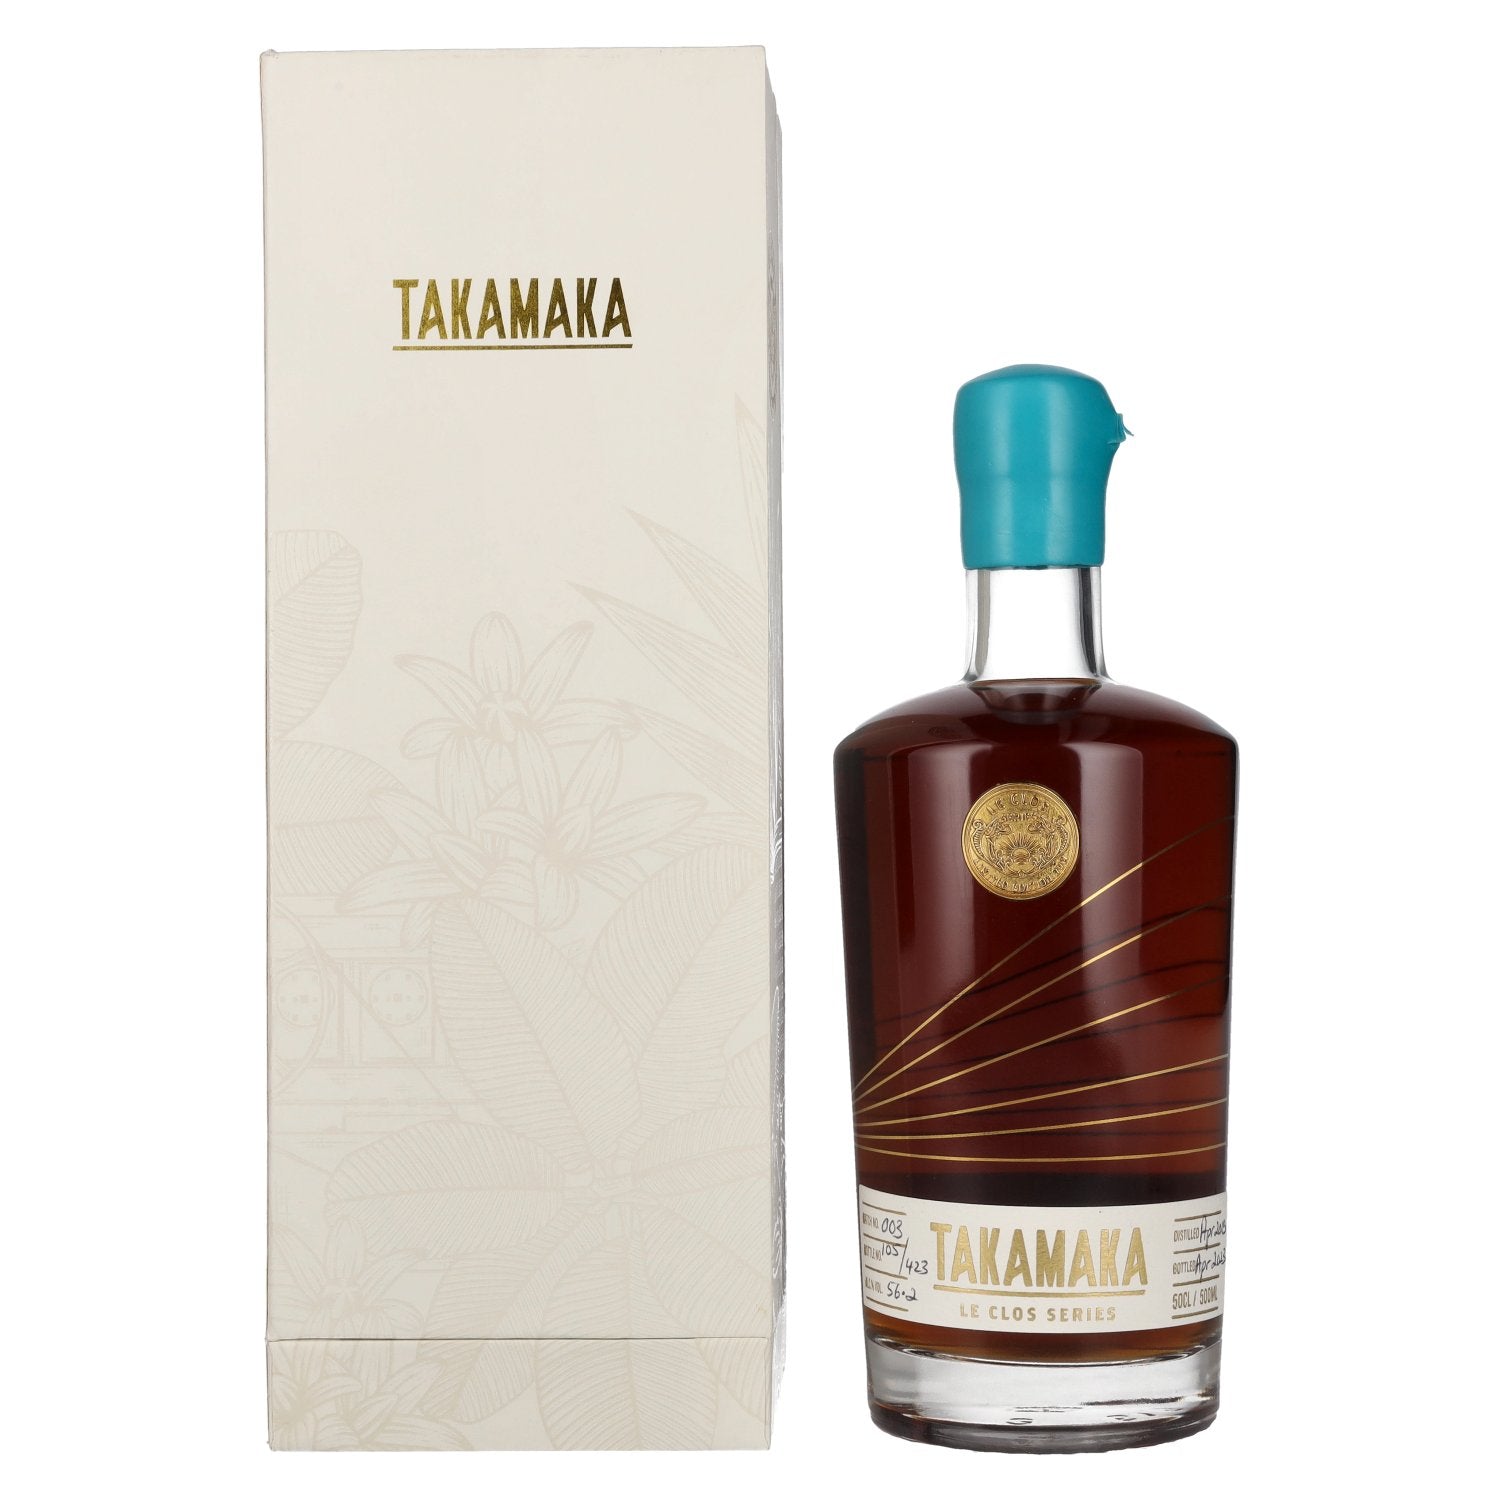 Takamaka LE CLOS EX PALO CORTADO Rum 56,2% Vol. 0,5l in Giftbox